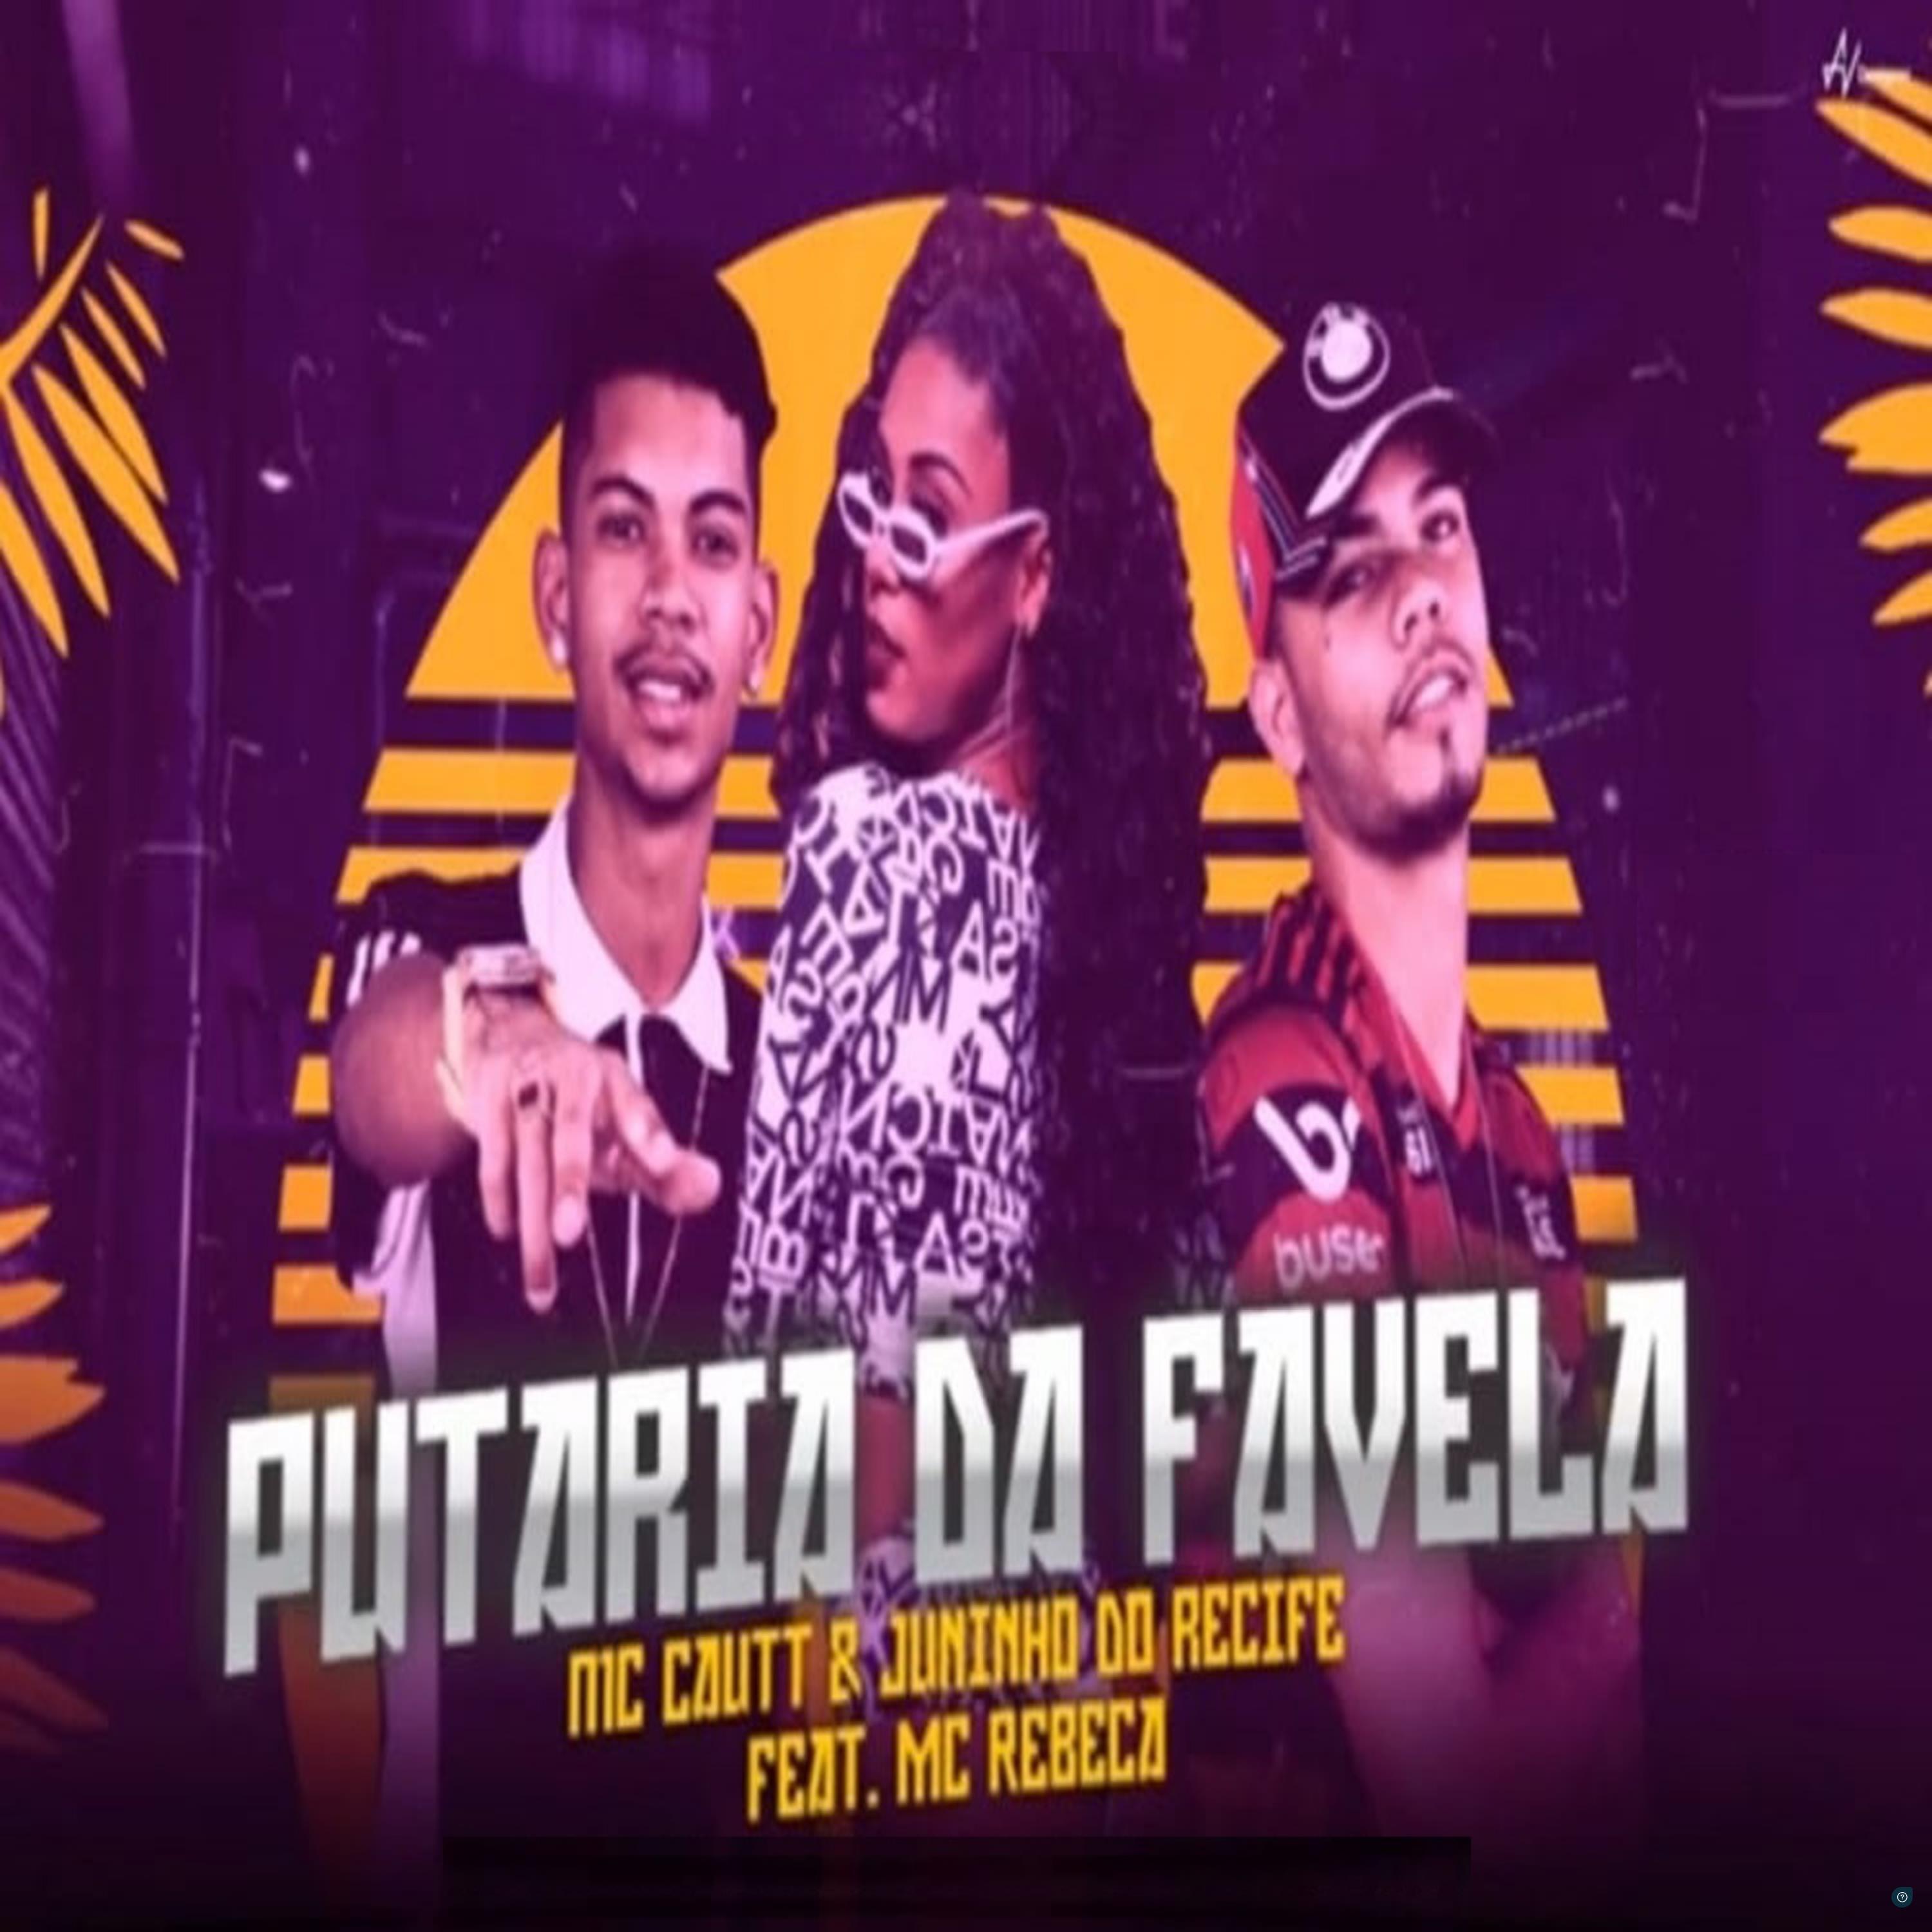 Mc Cautt e Juninho Do Recife - Putaria da Favela (feat. Mc Rebeca)